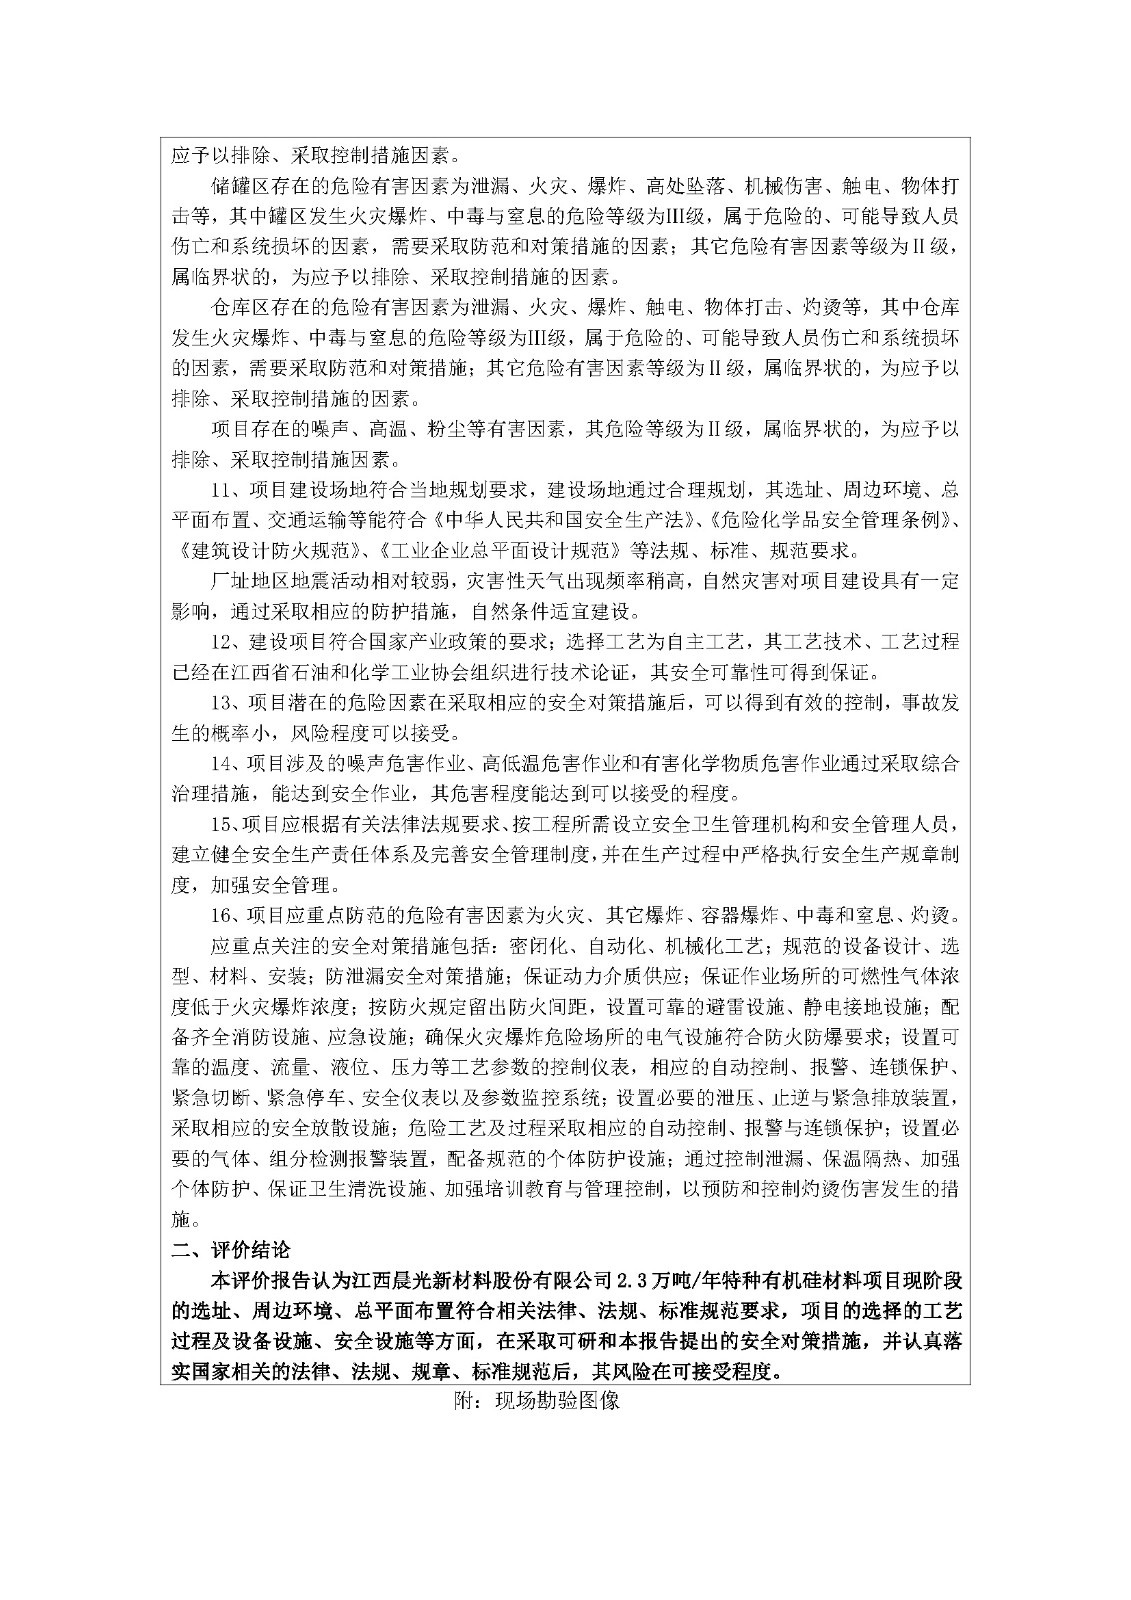 安全评价报告基本信息公开表(江西省晨光新材料股份有限公司)